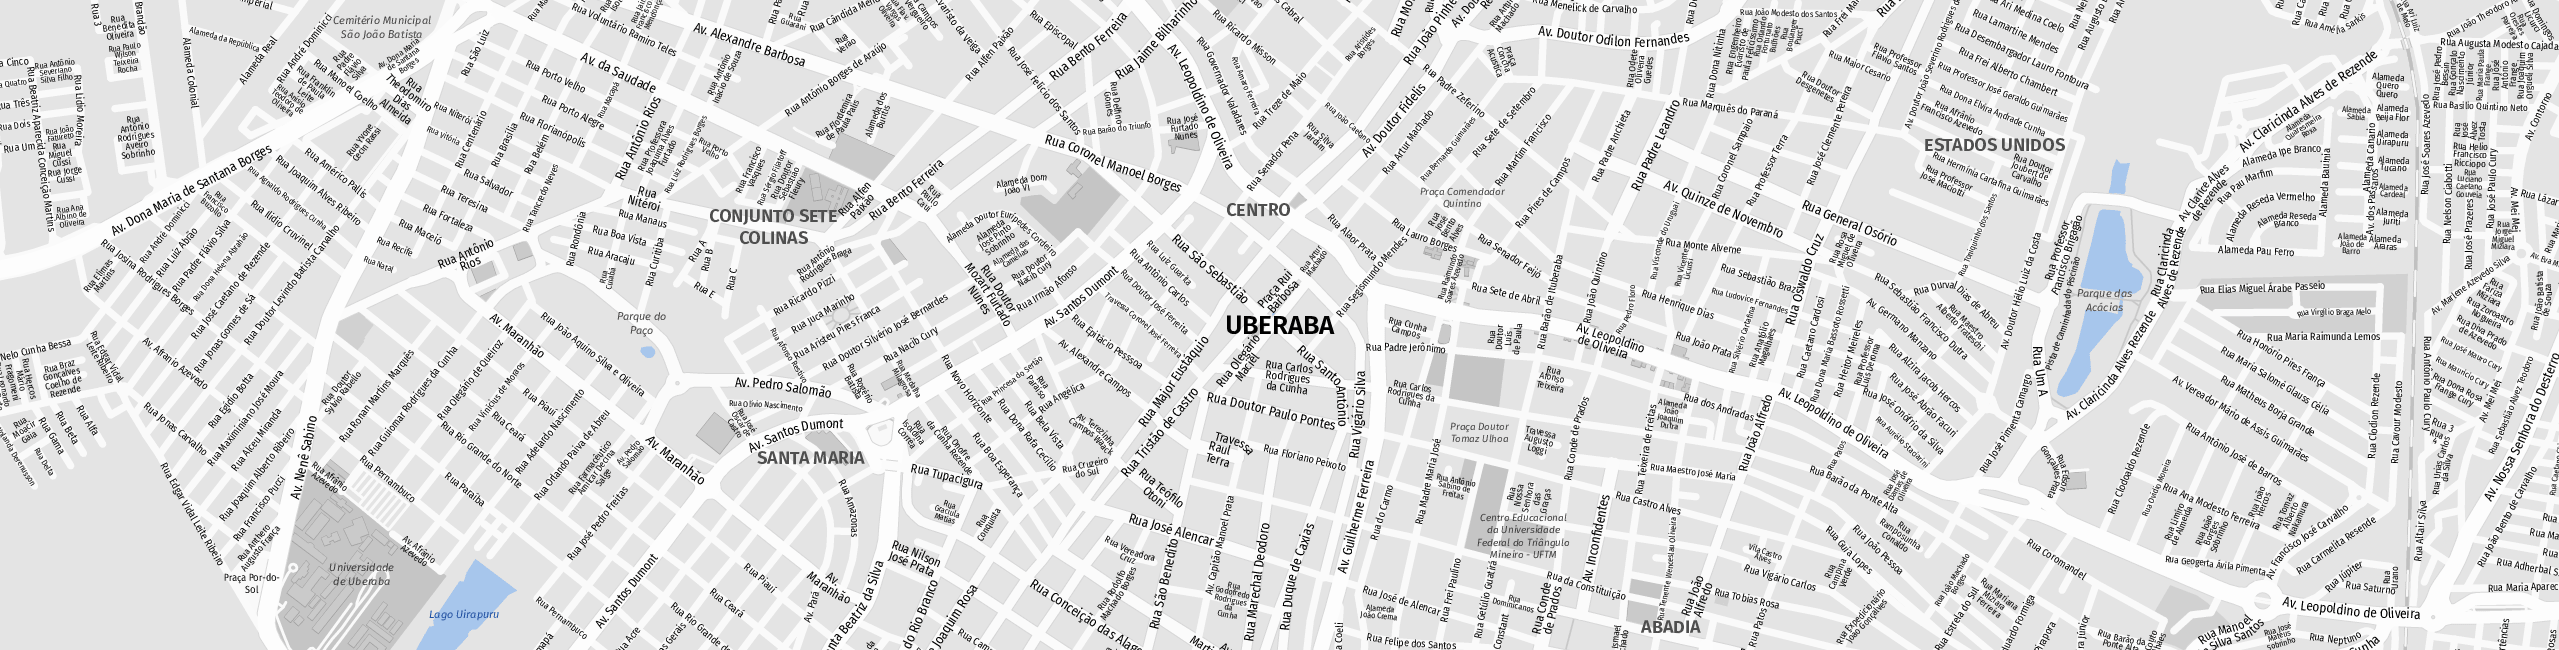 Stadtplan Uberaba zum Downloaden.